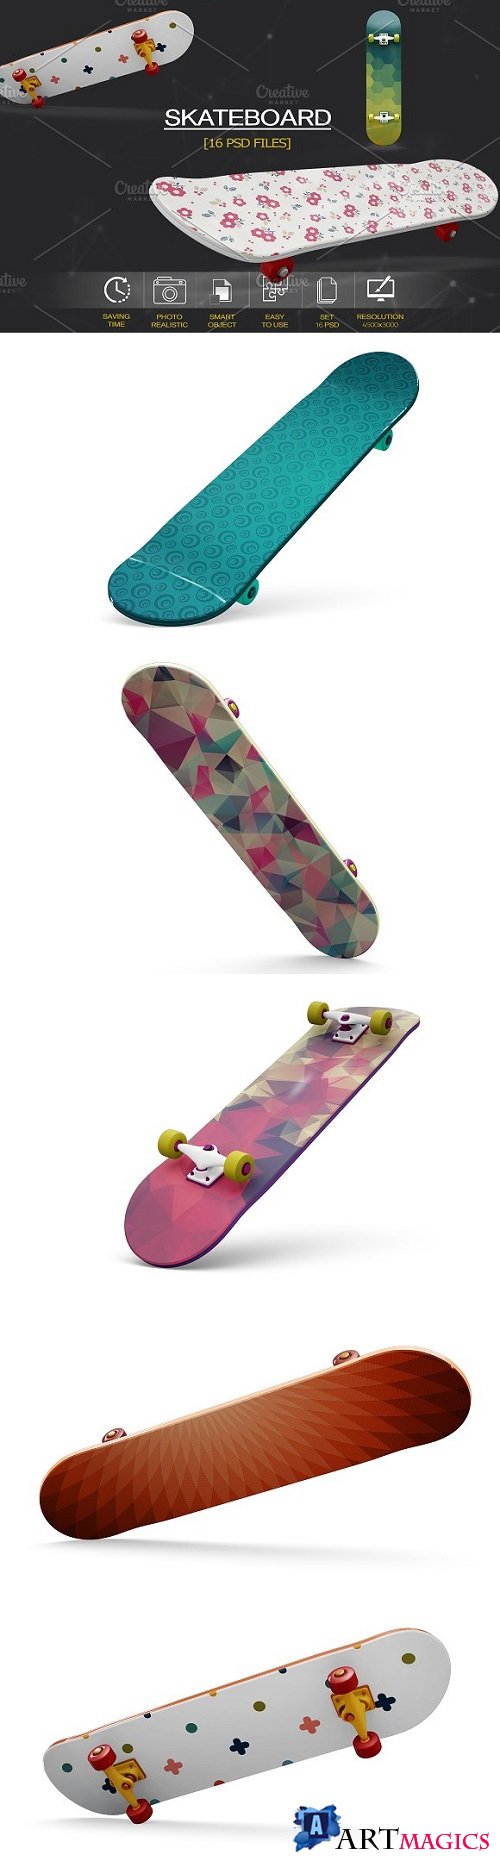 Skateboard Mockup - 2108298